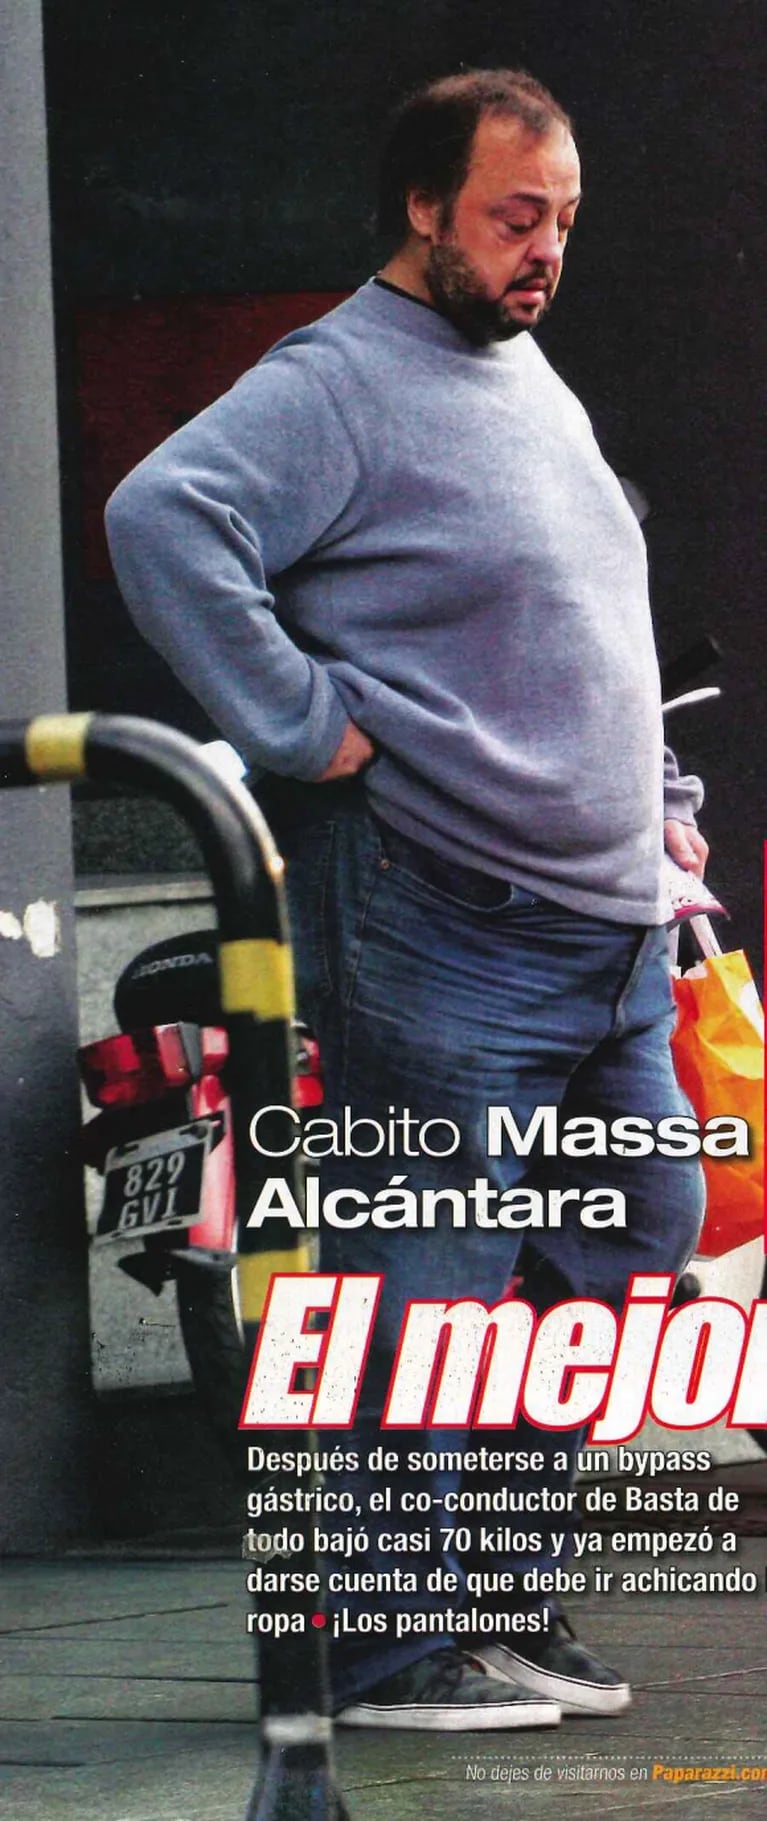 Cabito Massa Alcántara, tras el bypass gástrico con el que bajó 70 kilos: "Hoy sé que me voy a morir de cualquier cosa, menos de gordo"